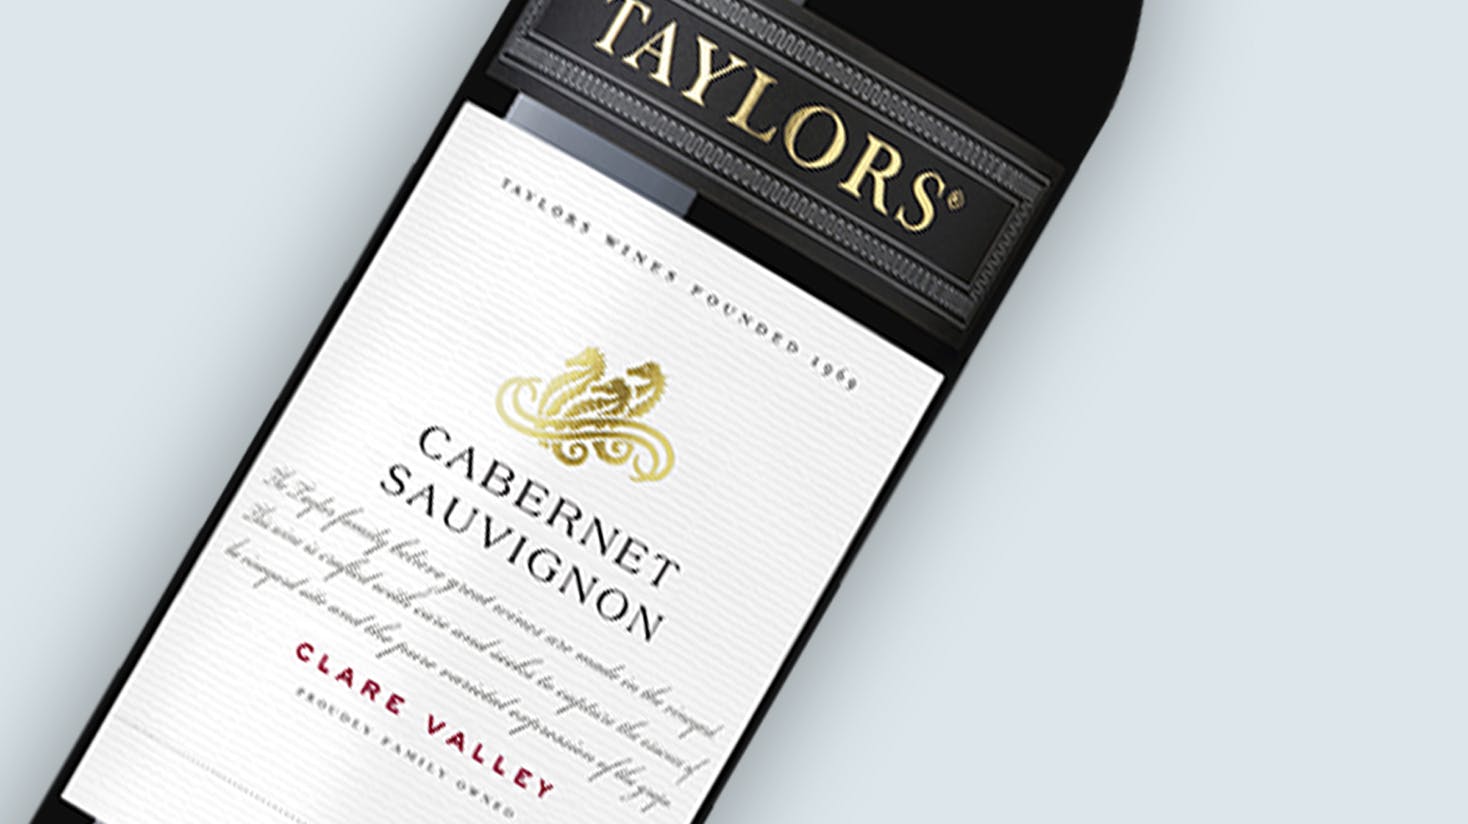 Image of Descubra cómo Taylors Wines, digitalmente transformó su empaque.